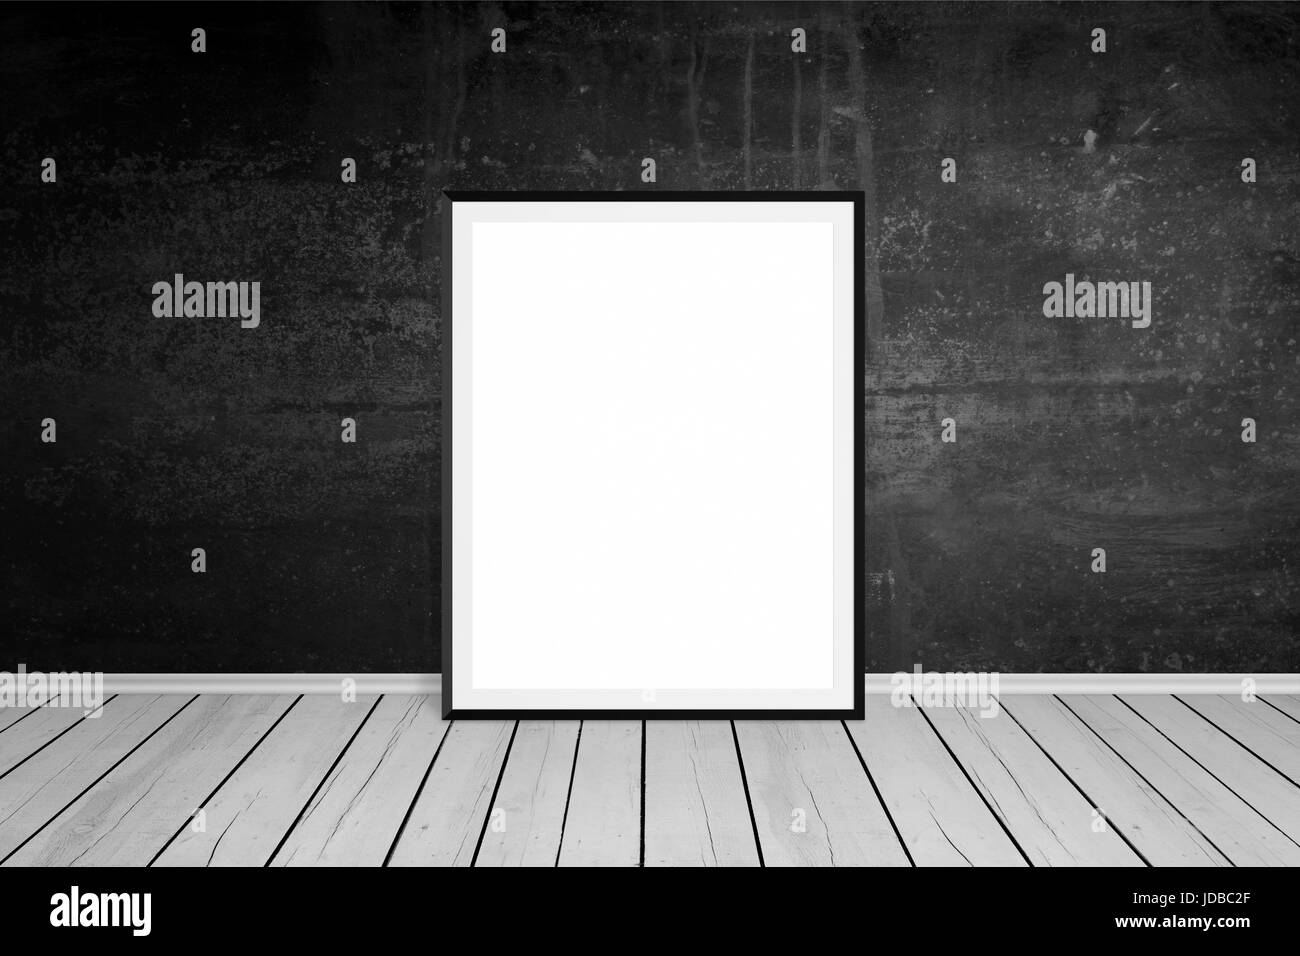 Marco de imagen se inclinó sobre la pared negra. Vacío, espacio en blanco de la maqueta de presentación de arte. Piso de madera. La habitación vacía. Foto de stock